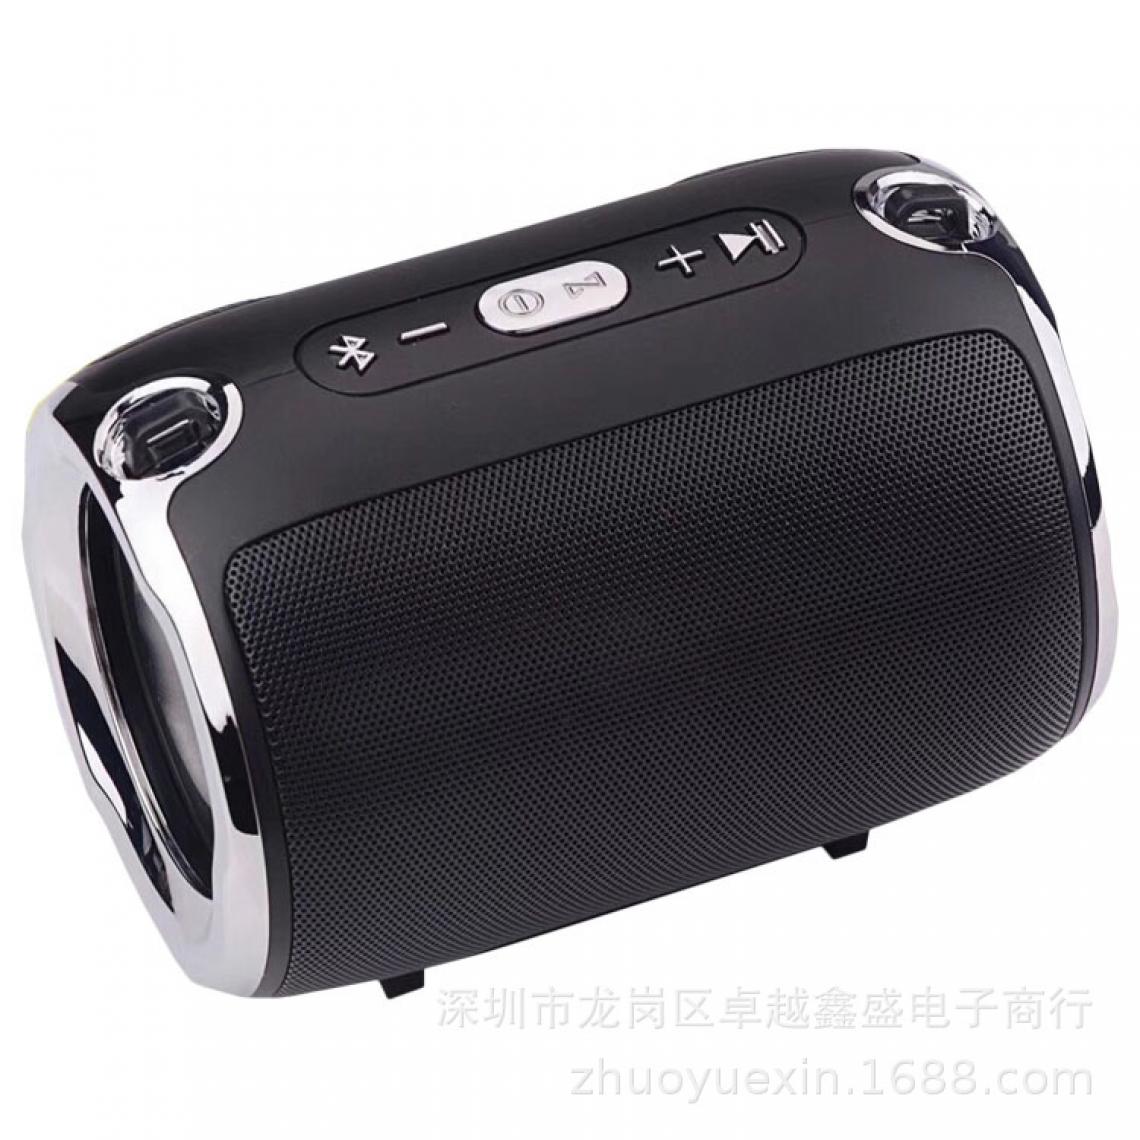 Universal - Petit haut-parleur Bluetooth portable avec FM radio musique subwoofer TF AUX haut-parleur USB Ordinateur Téléphone mobile | Haut-parleurs extérieurs (noir) - Hauts-parleurs